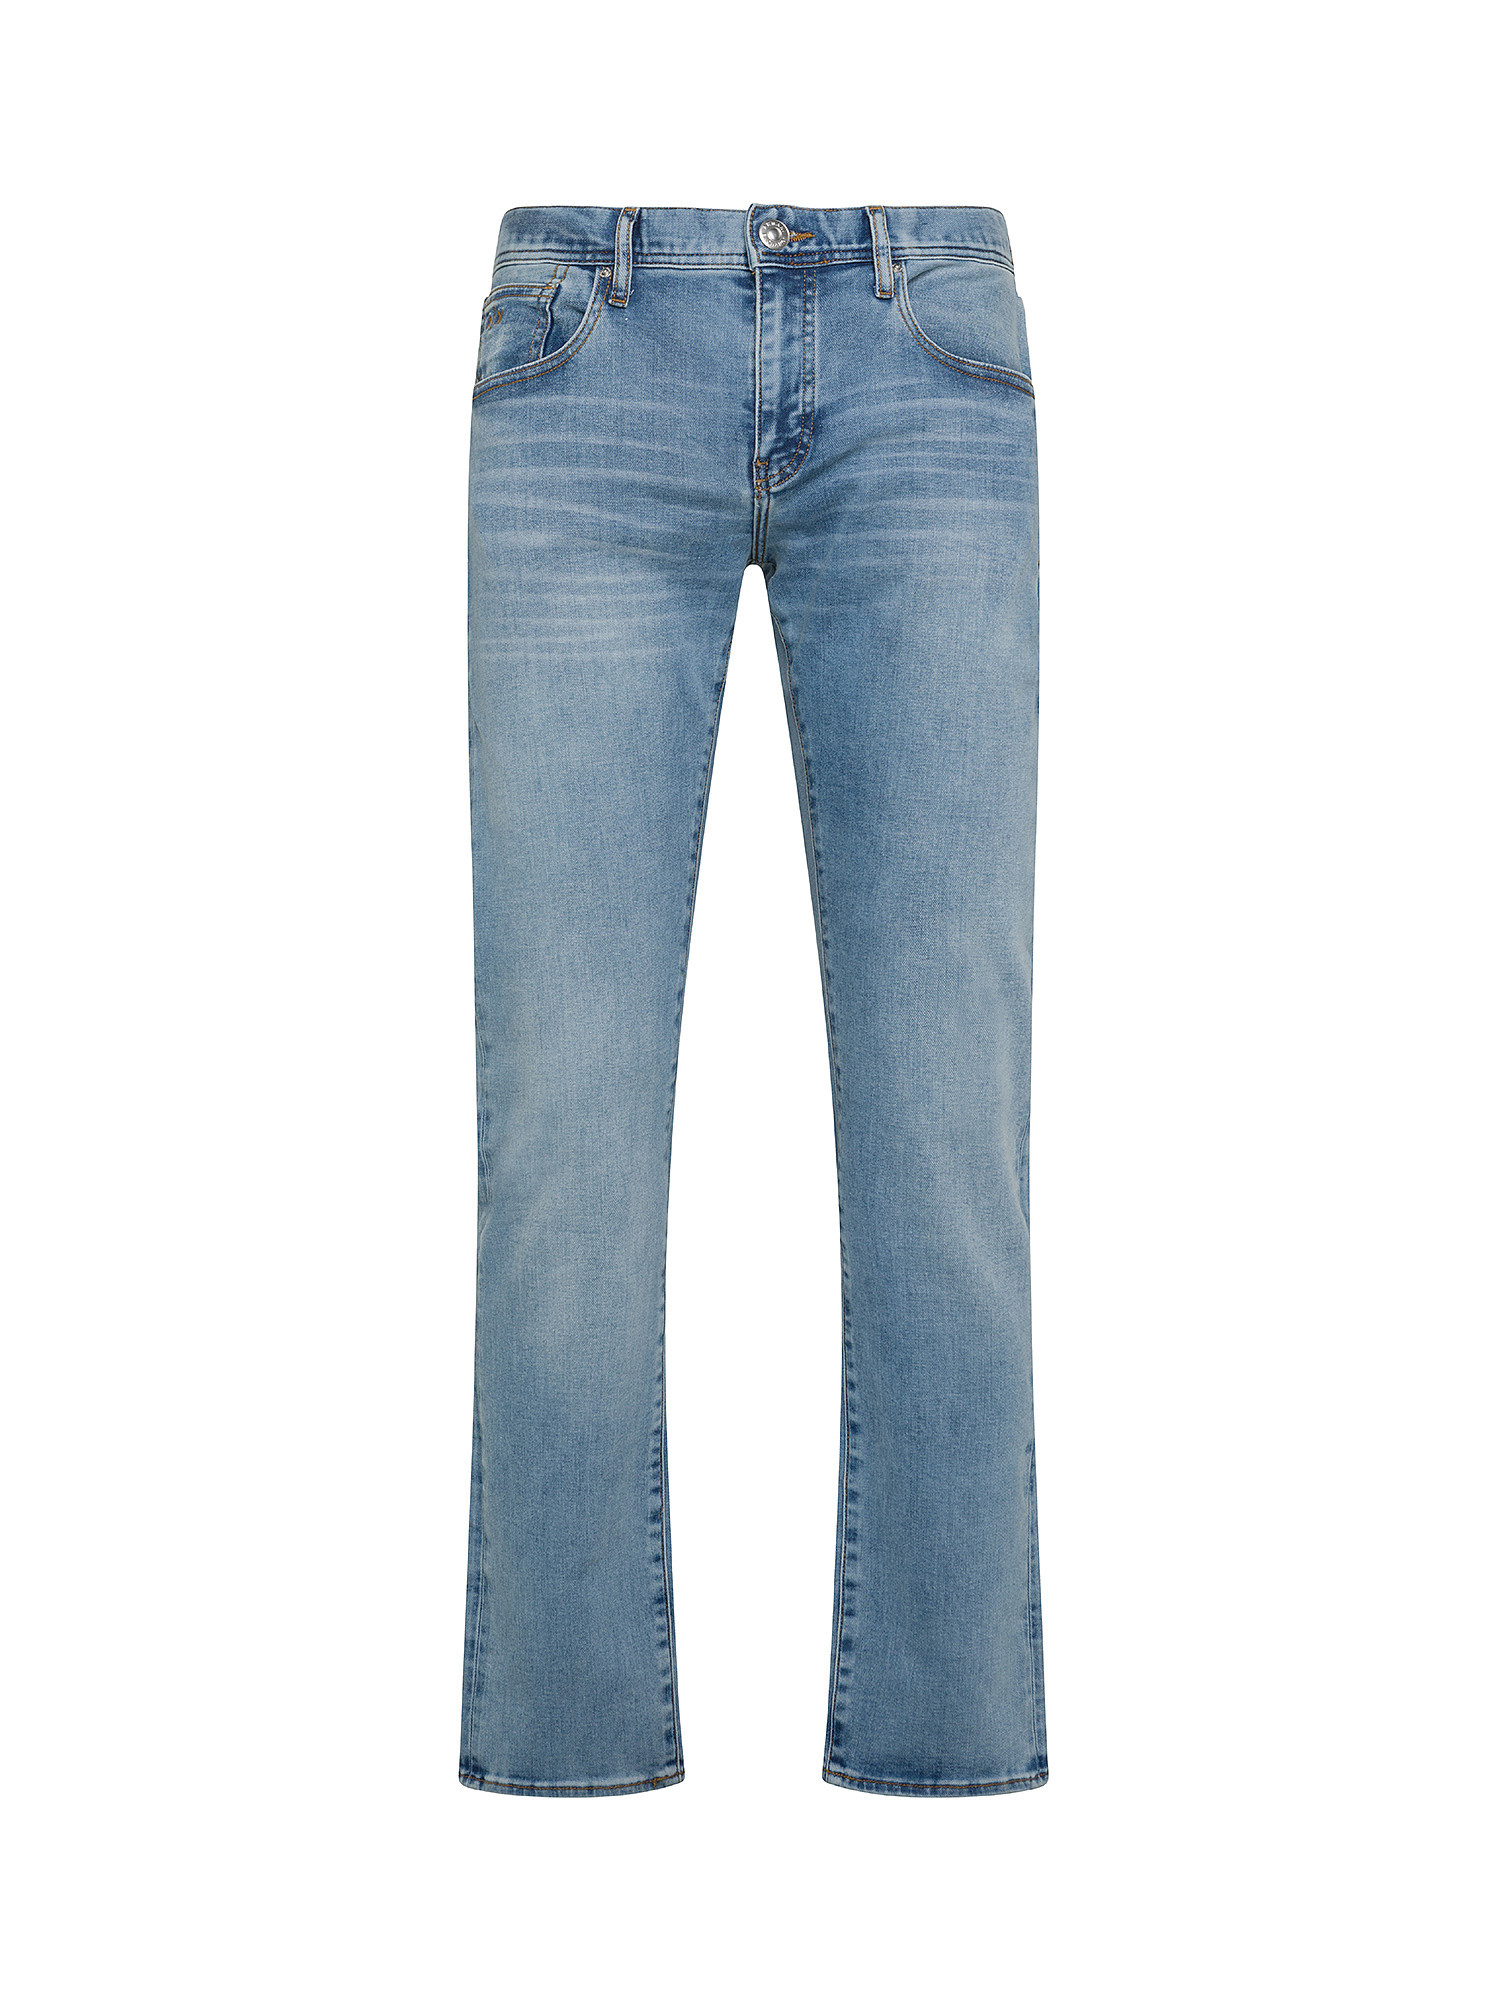 Armani Exchange - Five pocket slim fit jeans, Denim, large image number 0